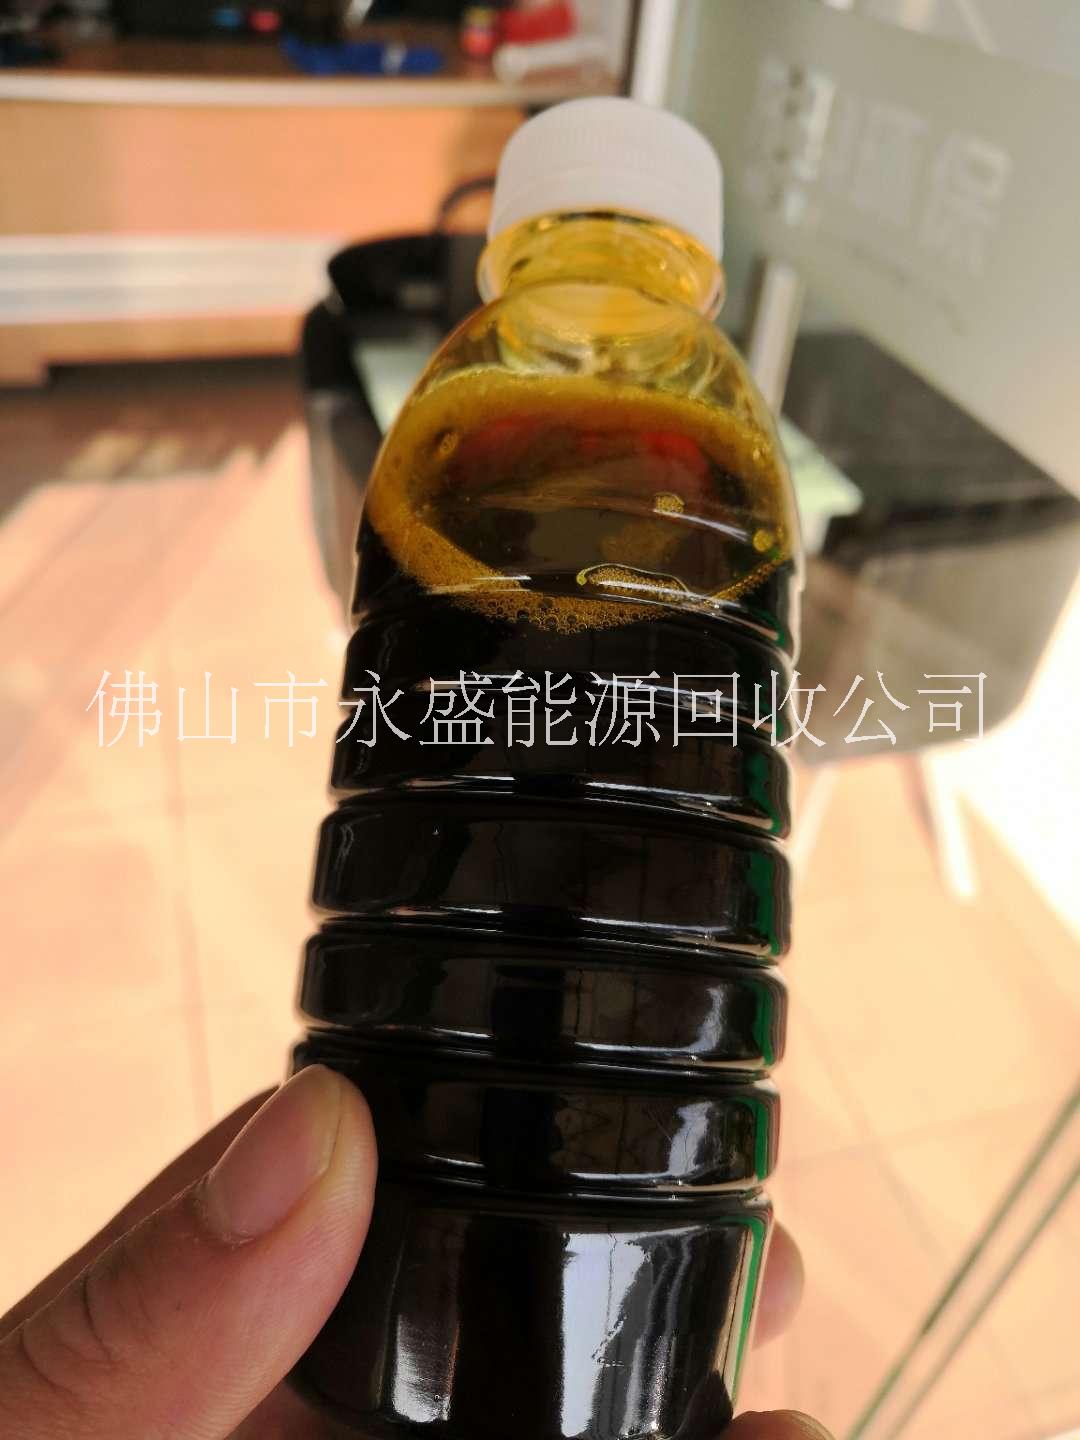 广东回收矿物油价格 广东回收矿物油图片